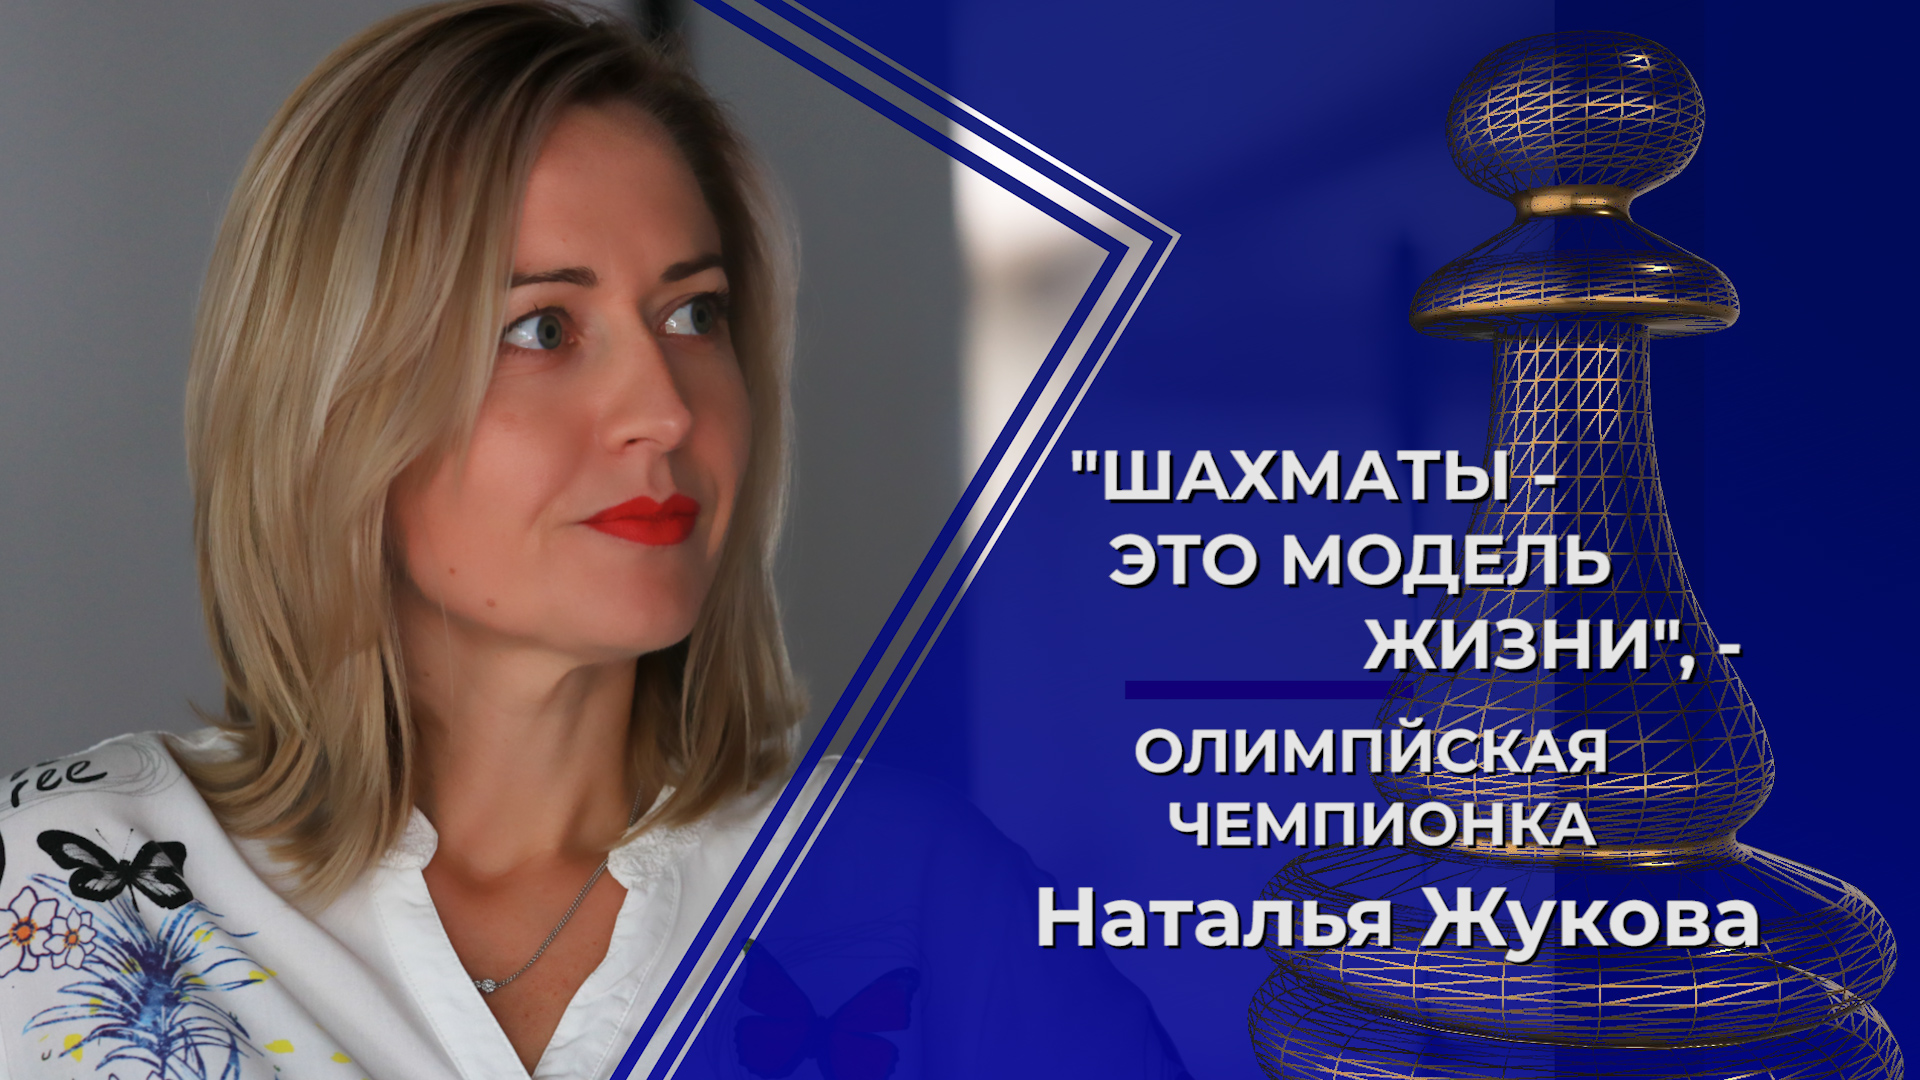 «Шахматы – это модель жизни», – интервью с олимпийской чемпионкой Натальей Жуковой «фото»